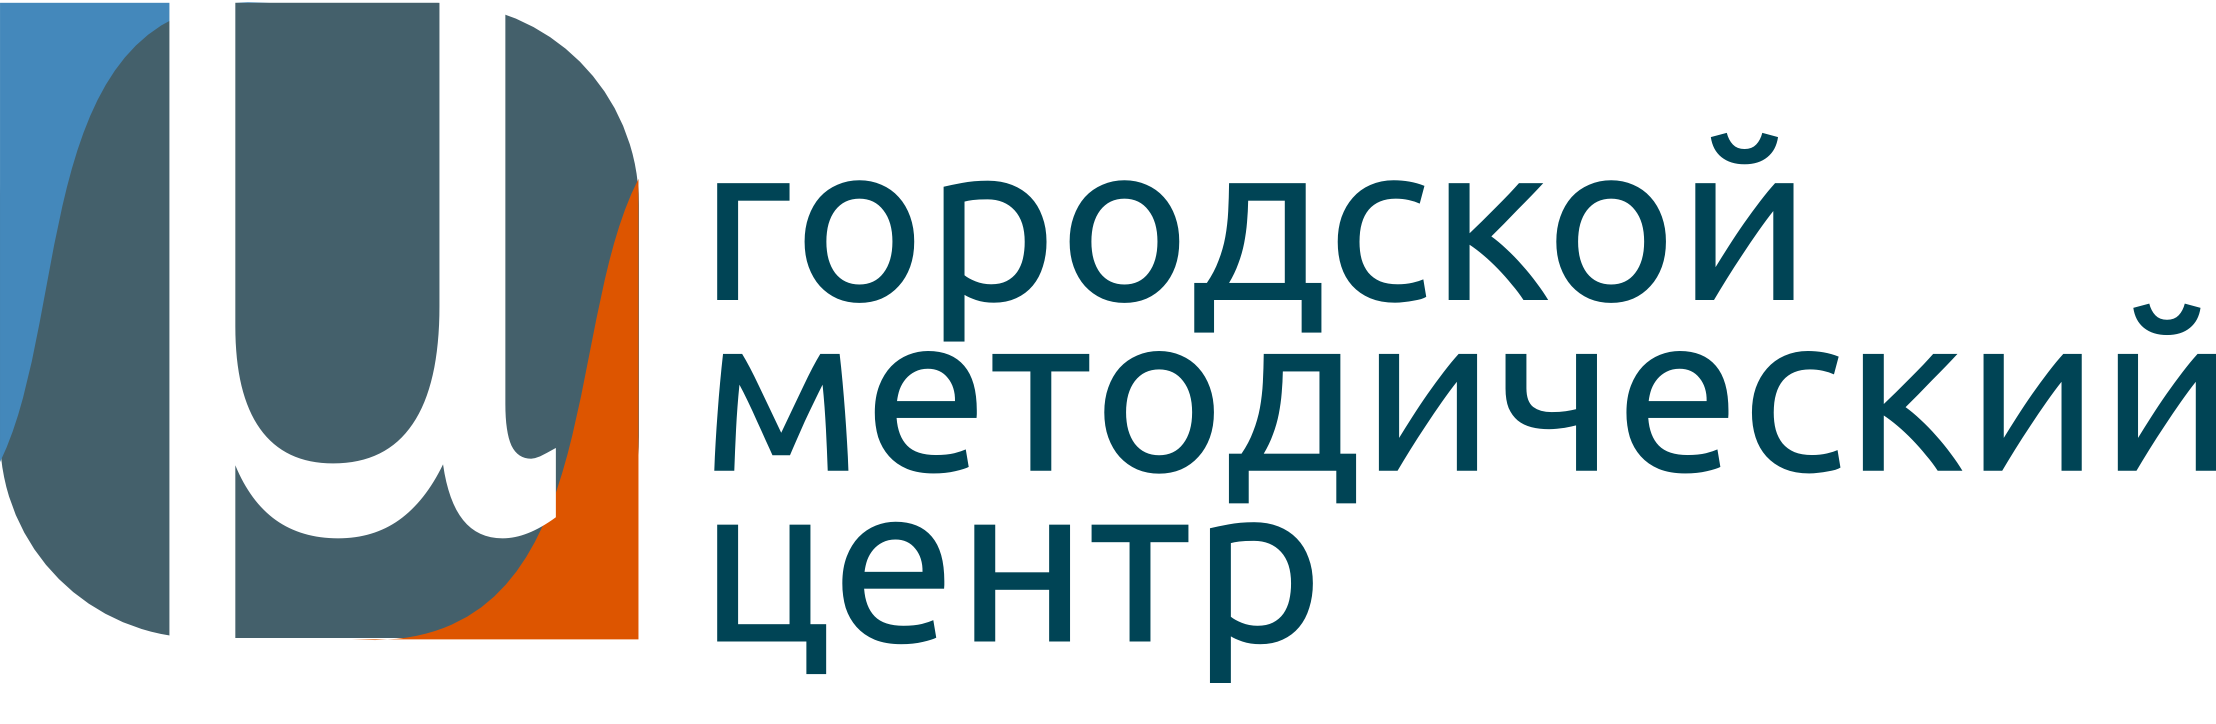 Городской департамент образования москвы. Городской методический центр. ГМЦ городской методический центр. Городской методический центр логотип. ГМЦ логотип.